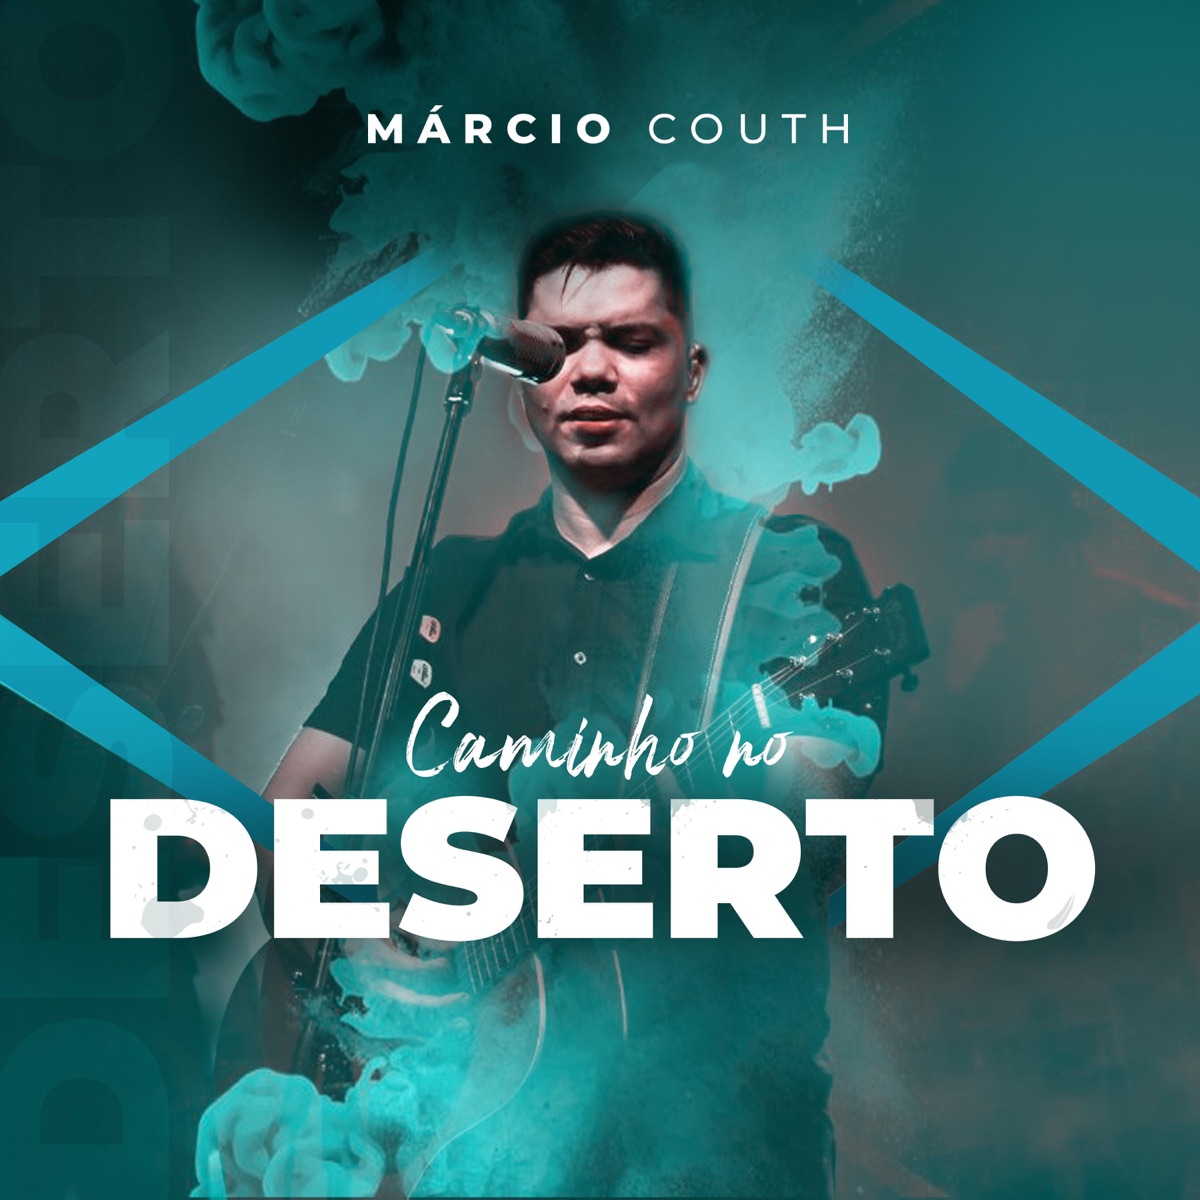 Caminho no Deserto (Ao Vivo) [feat. Viviane Martins] - Canción de Marcio  Couth - Apple Music